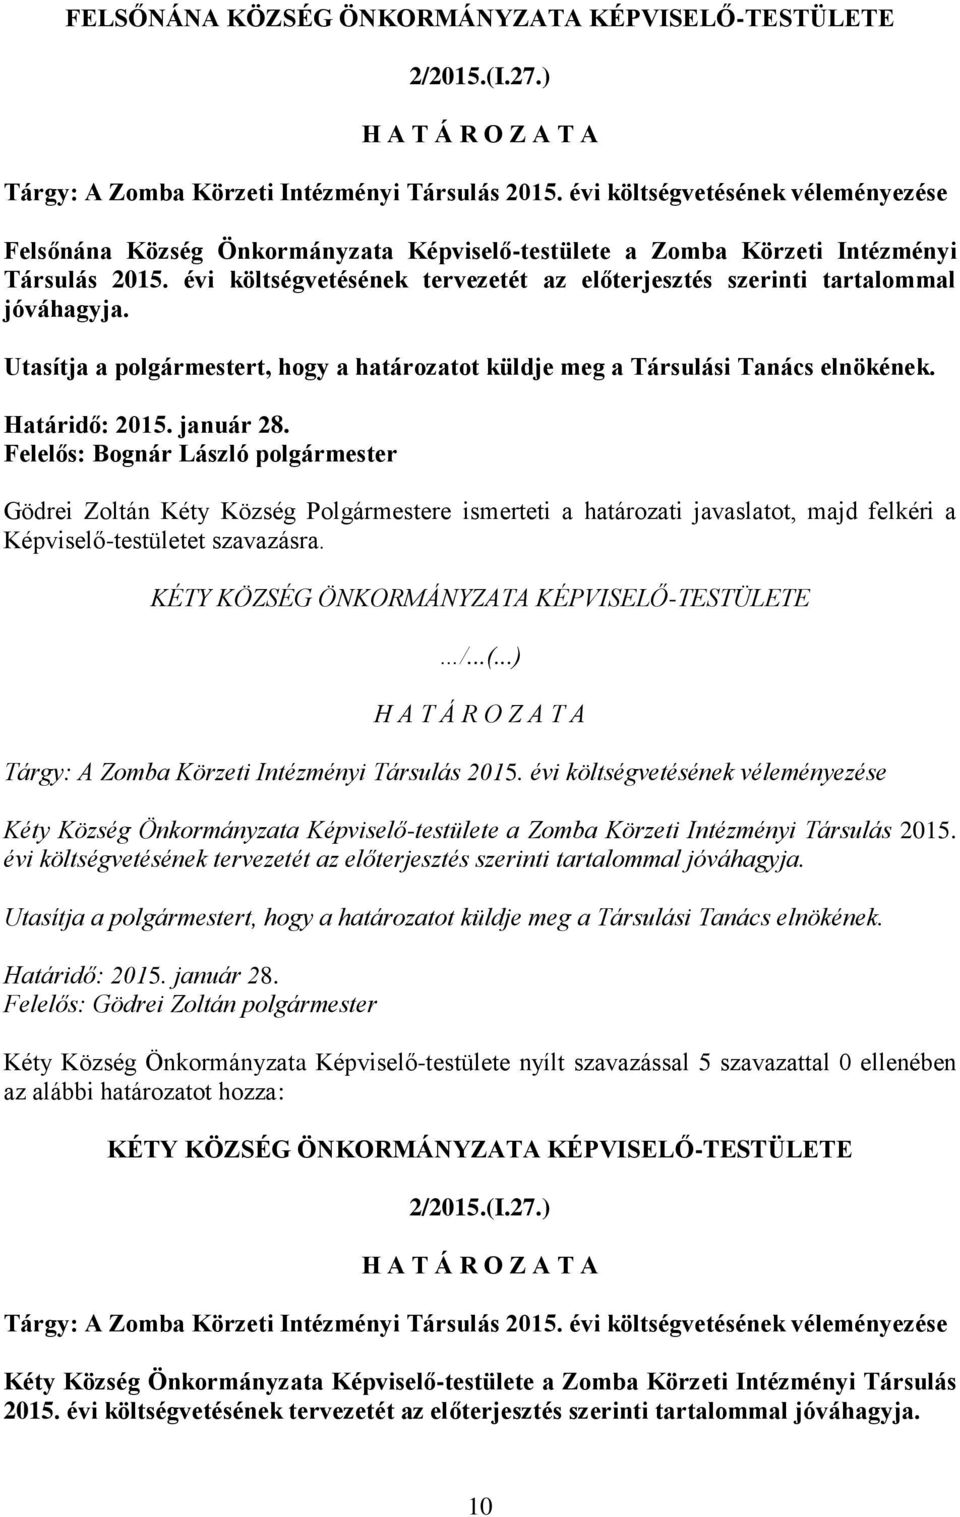 Felelős: Bognár László Gödrei Zoltán Kéty Község Polgármestere ismerteti a határozati javaslatot, majd felkéri a Képviselő-testületet szavazásra.